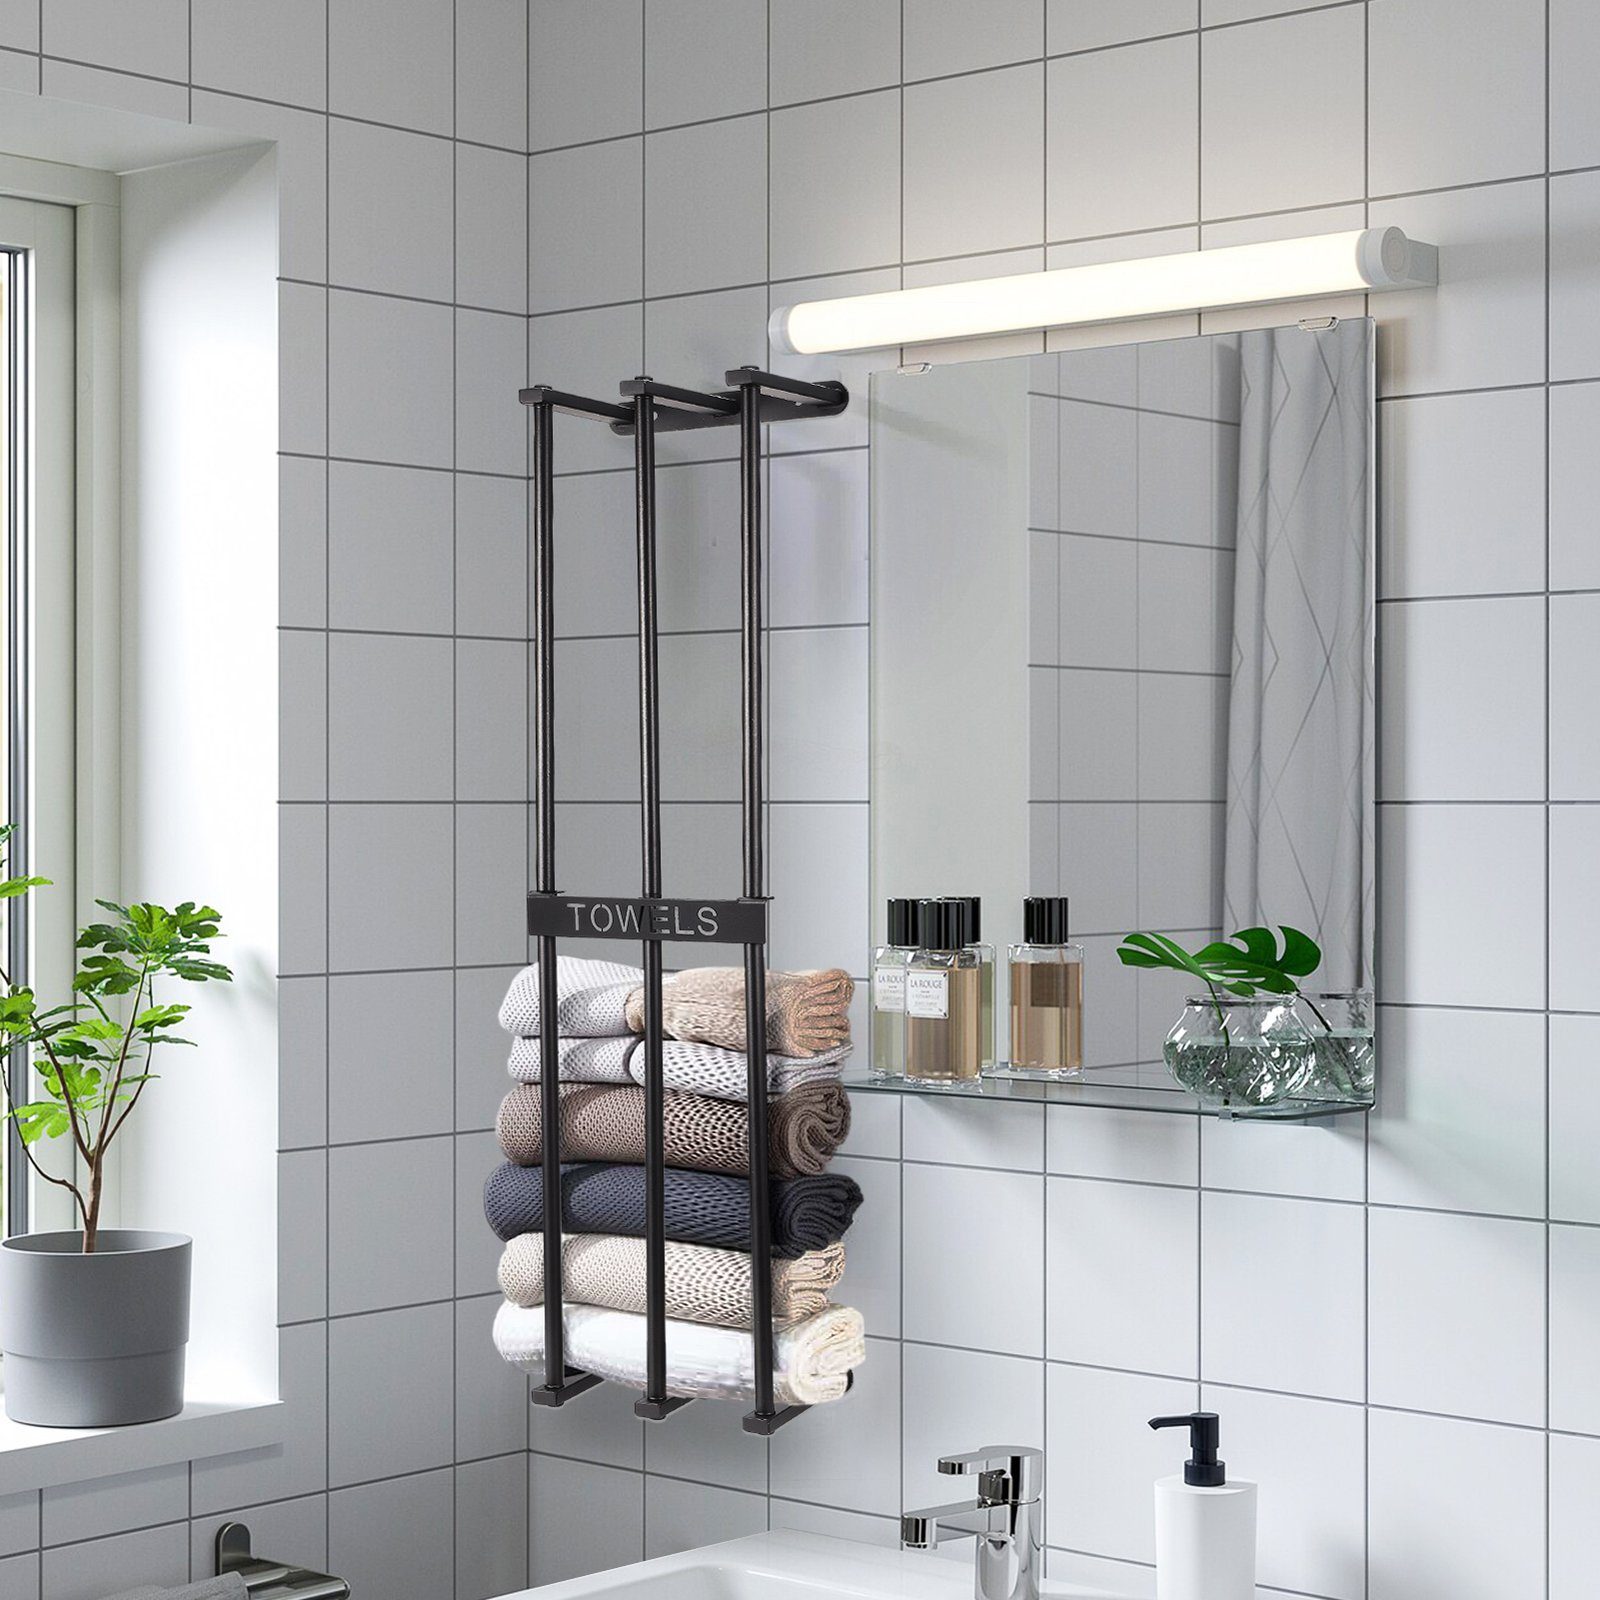 SEEZSSA Handtuchhalter Roll für Wand Handtuch Handtuchlappen Handtuchhalter zum Falten Badezimmer&Hotel, Metall-Badetuchhalter Wandmontierter großer